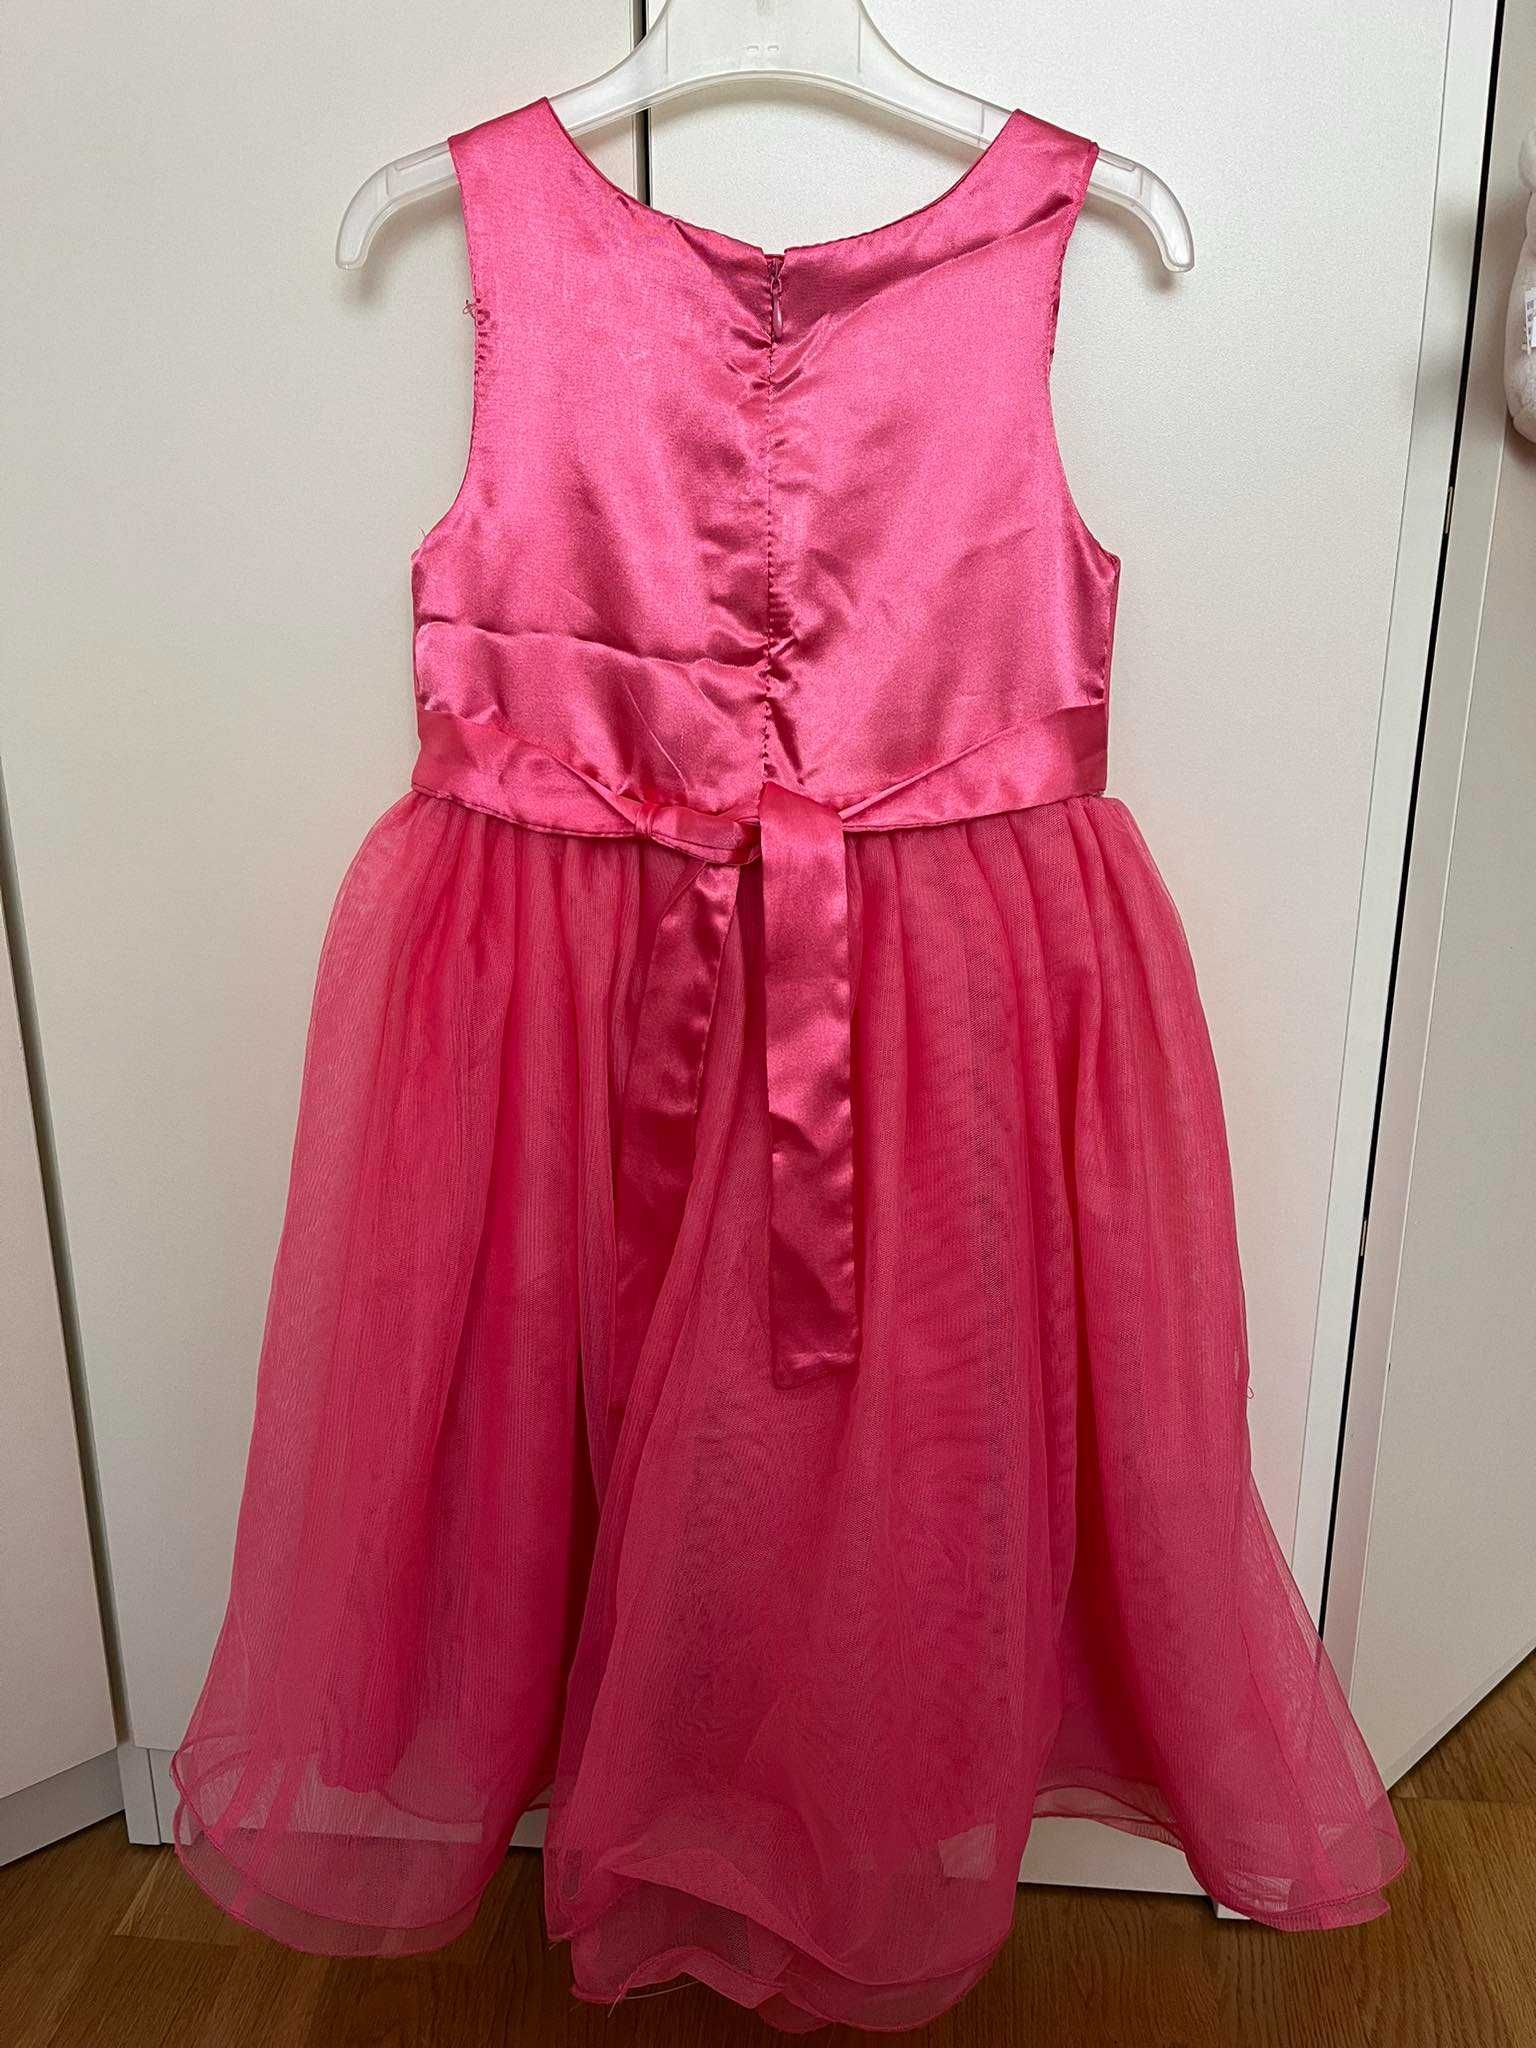 Duża paka - Ubrania dla dziewczynki rozmiar 122-128 cm